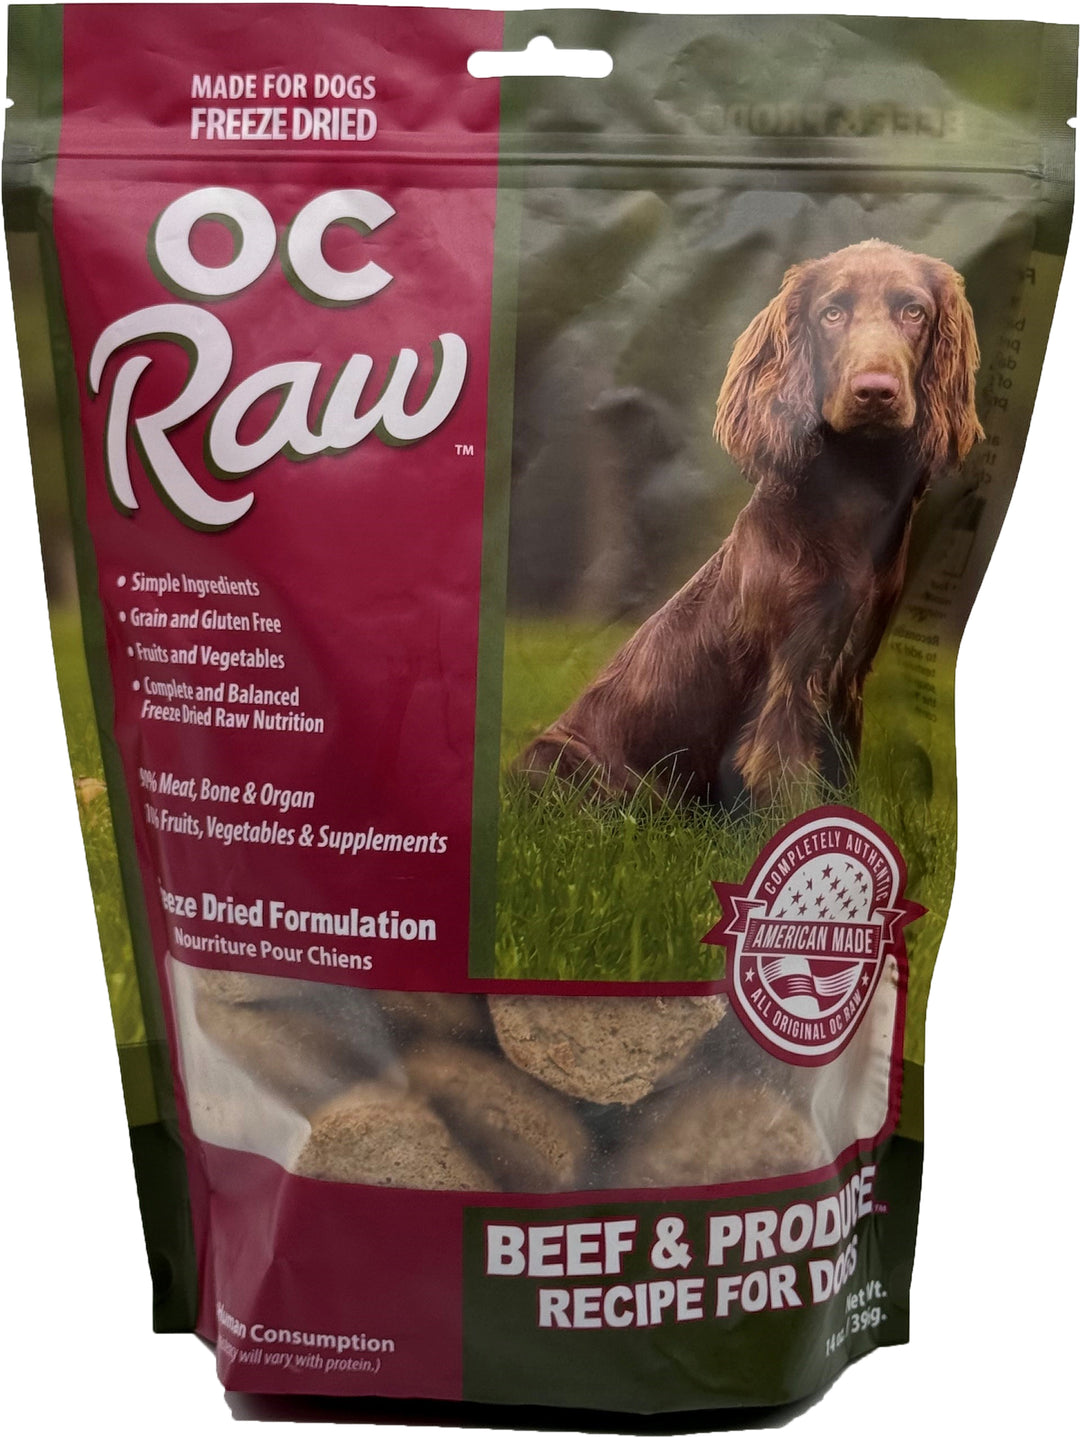 OC Raw - Freeze Dried Raw - Beef & Produce Sliders (14 oz - 396g)